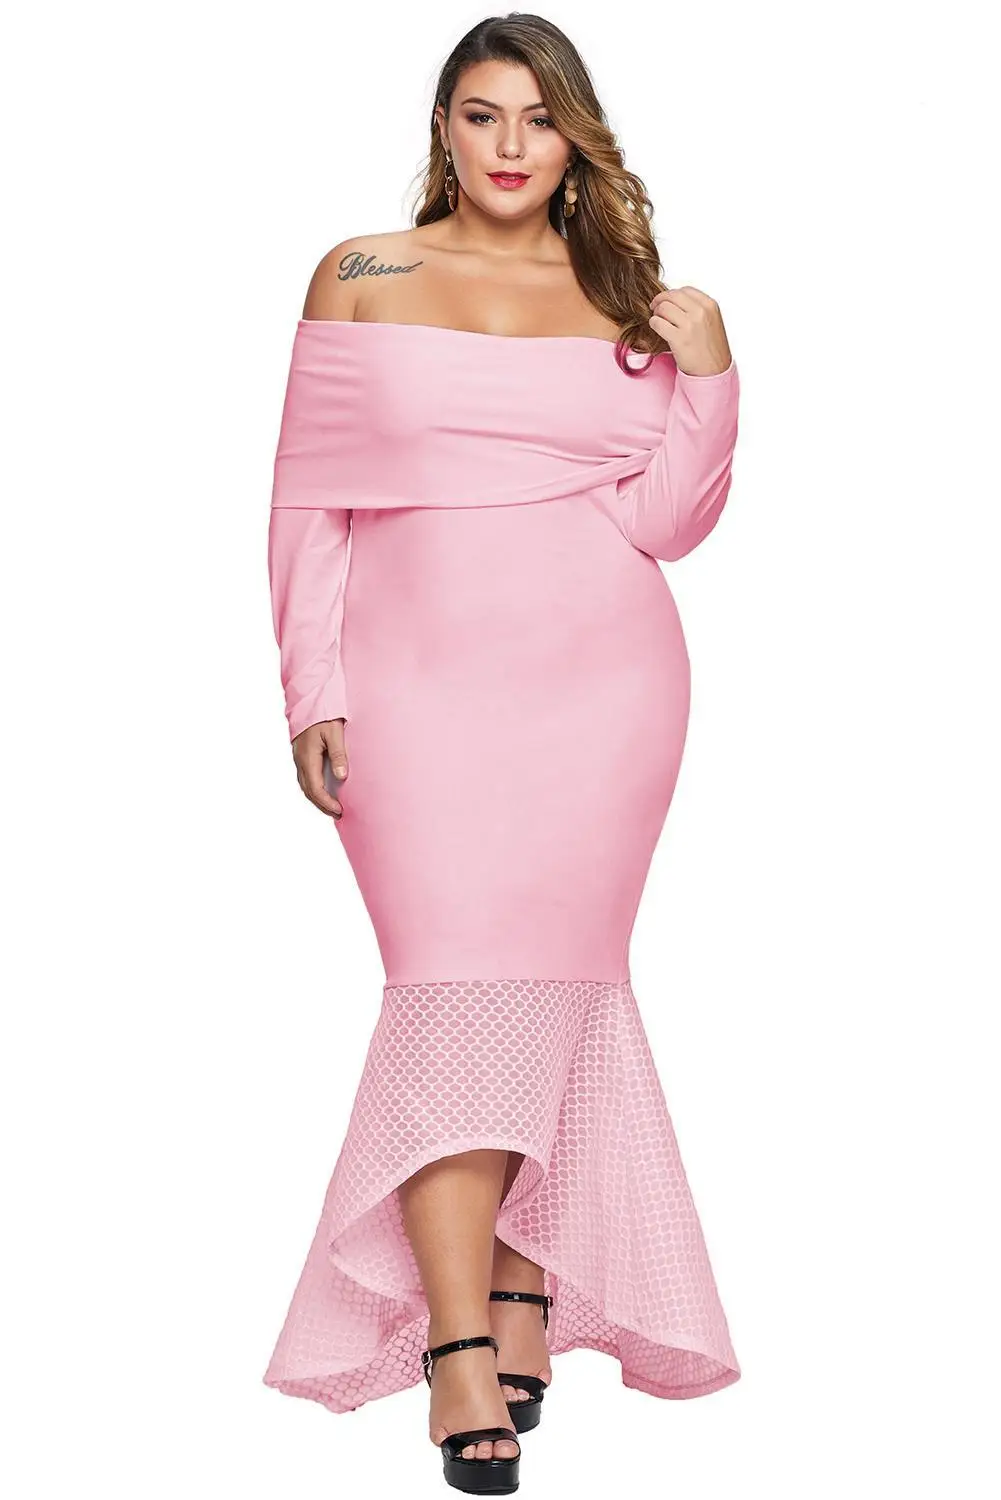 Черное платье с открытыми плечами, рыбий хвост размера плюс, макси платье для женщин, плюс размер, 5XL, 4XL, 3XL, Hi-low Hem, облегающее, вечерние, обтягивающее платье - Цвет: Розовый